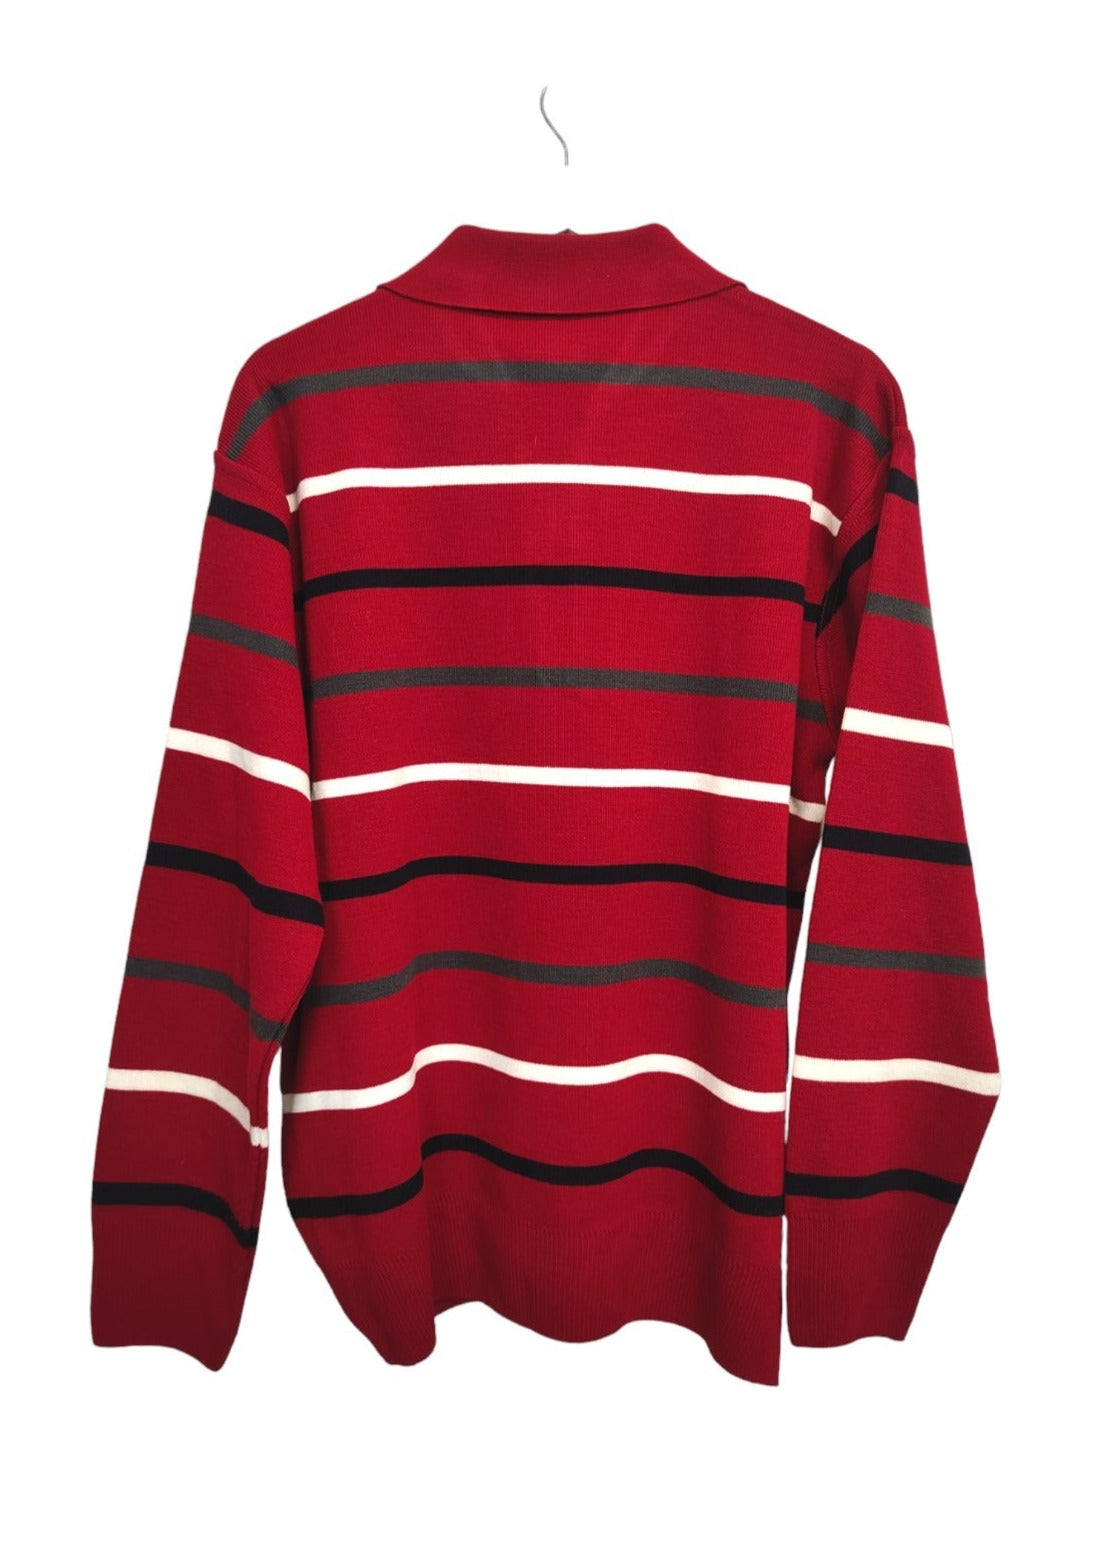 Πλεκτή Ανδρική Μπλούζα/Πουλόβερ WELLENSTEYN σε Κόκκινο χρώμα (Large)